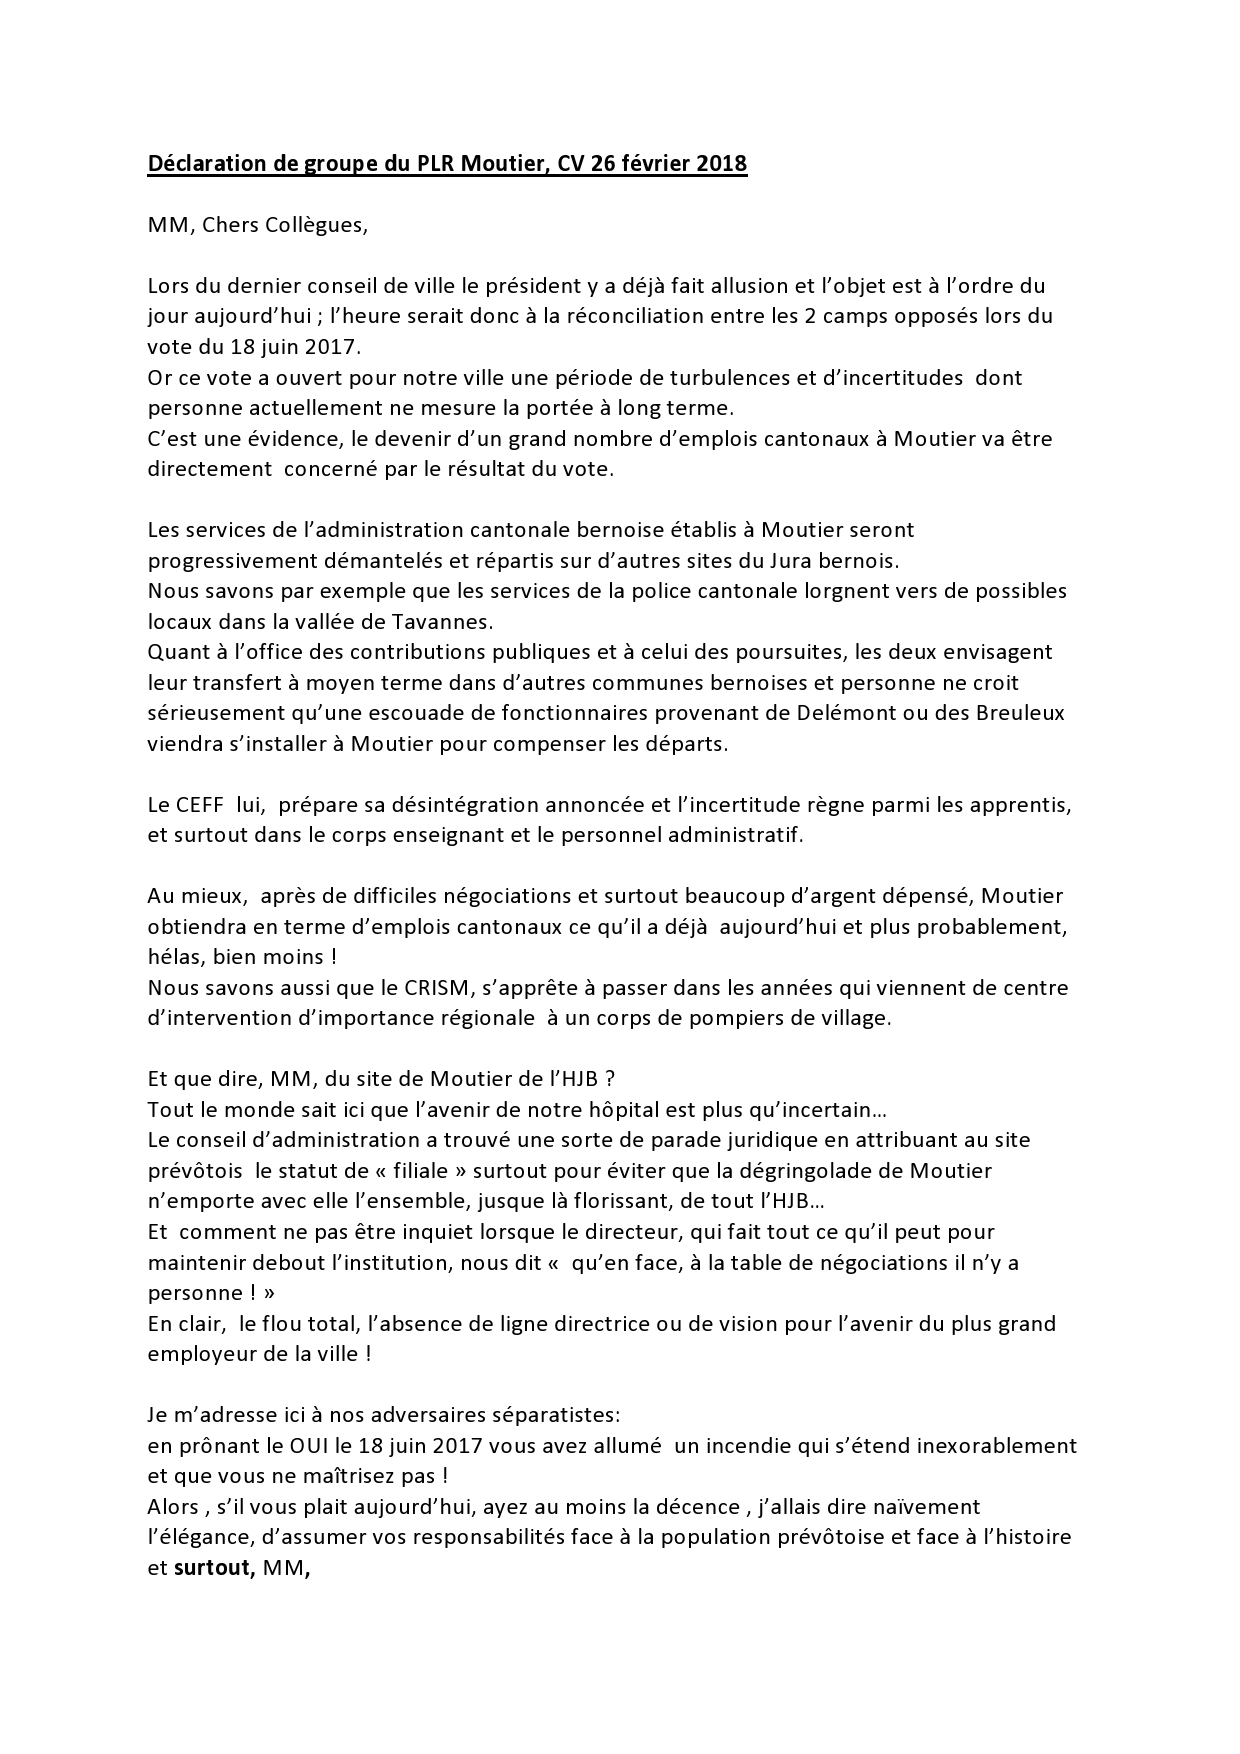 Déclaration de groupe du PLR Moutier, CV 26 février 2018 partie 1